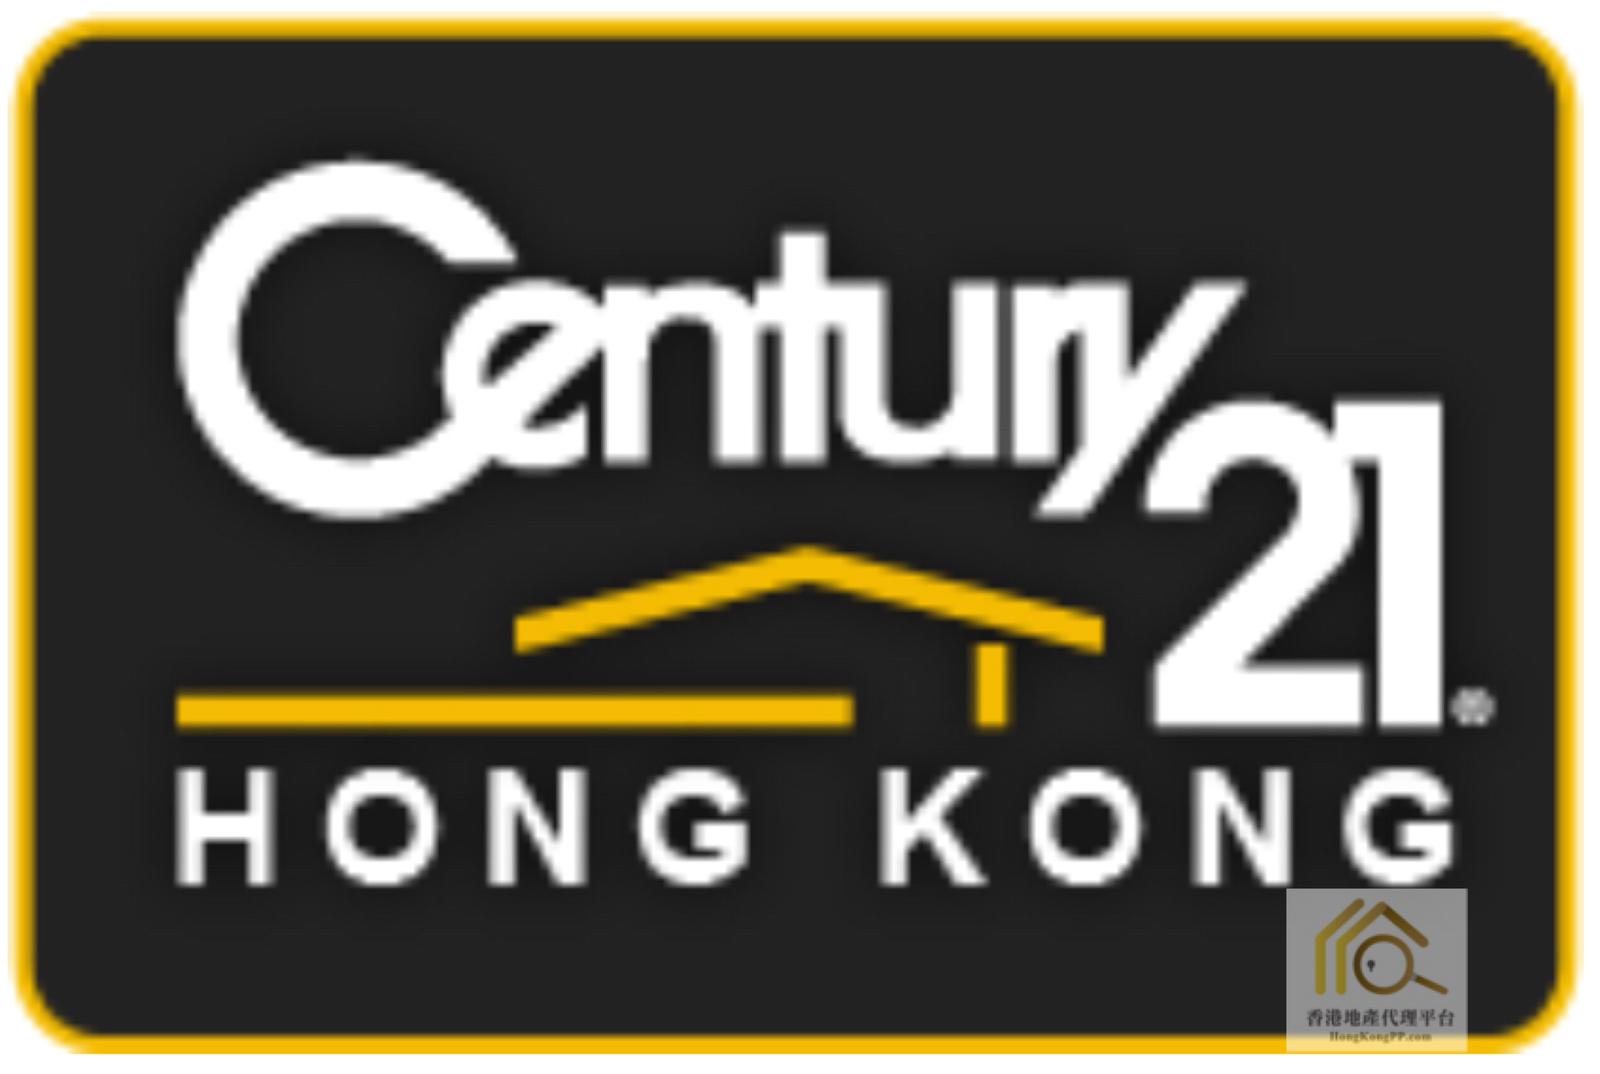 地產代理公司: 世紀21  世紀21香港有限公司